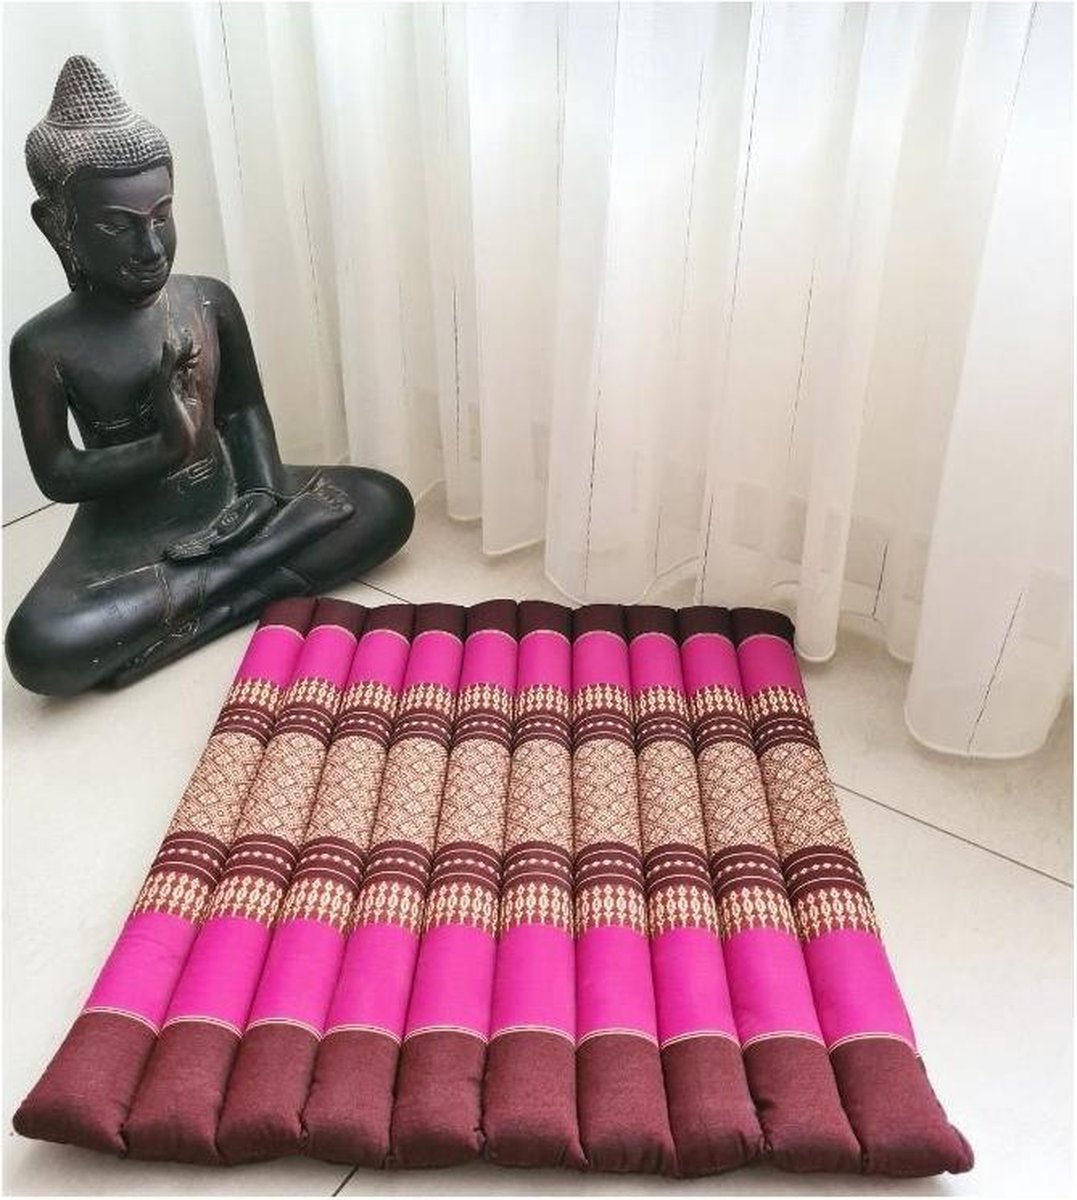 Meditatiemat – Yogamat – meditatiemat vierkant - Vierkant matje – Thais matje – 50x50x4 cm - Roze